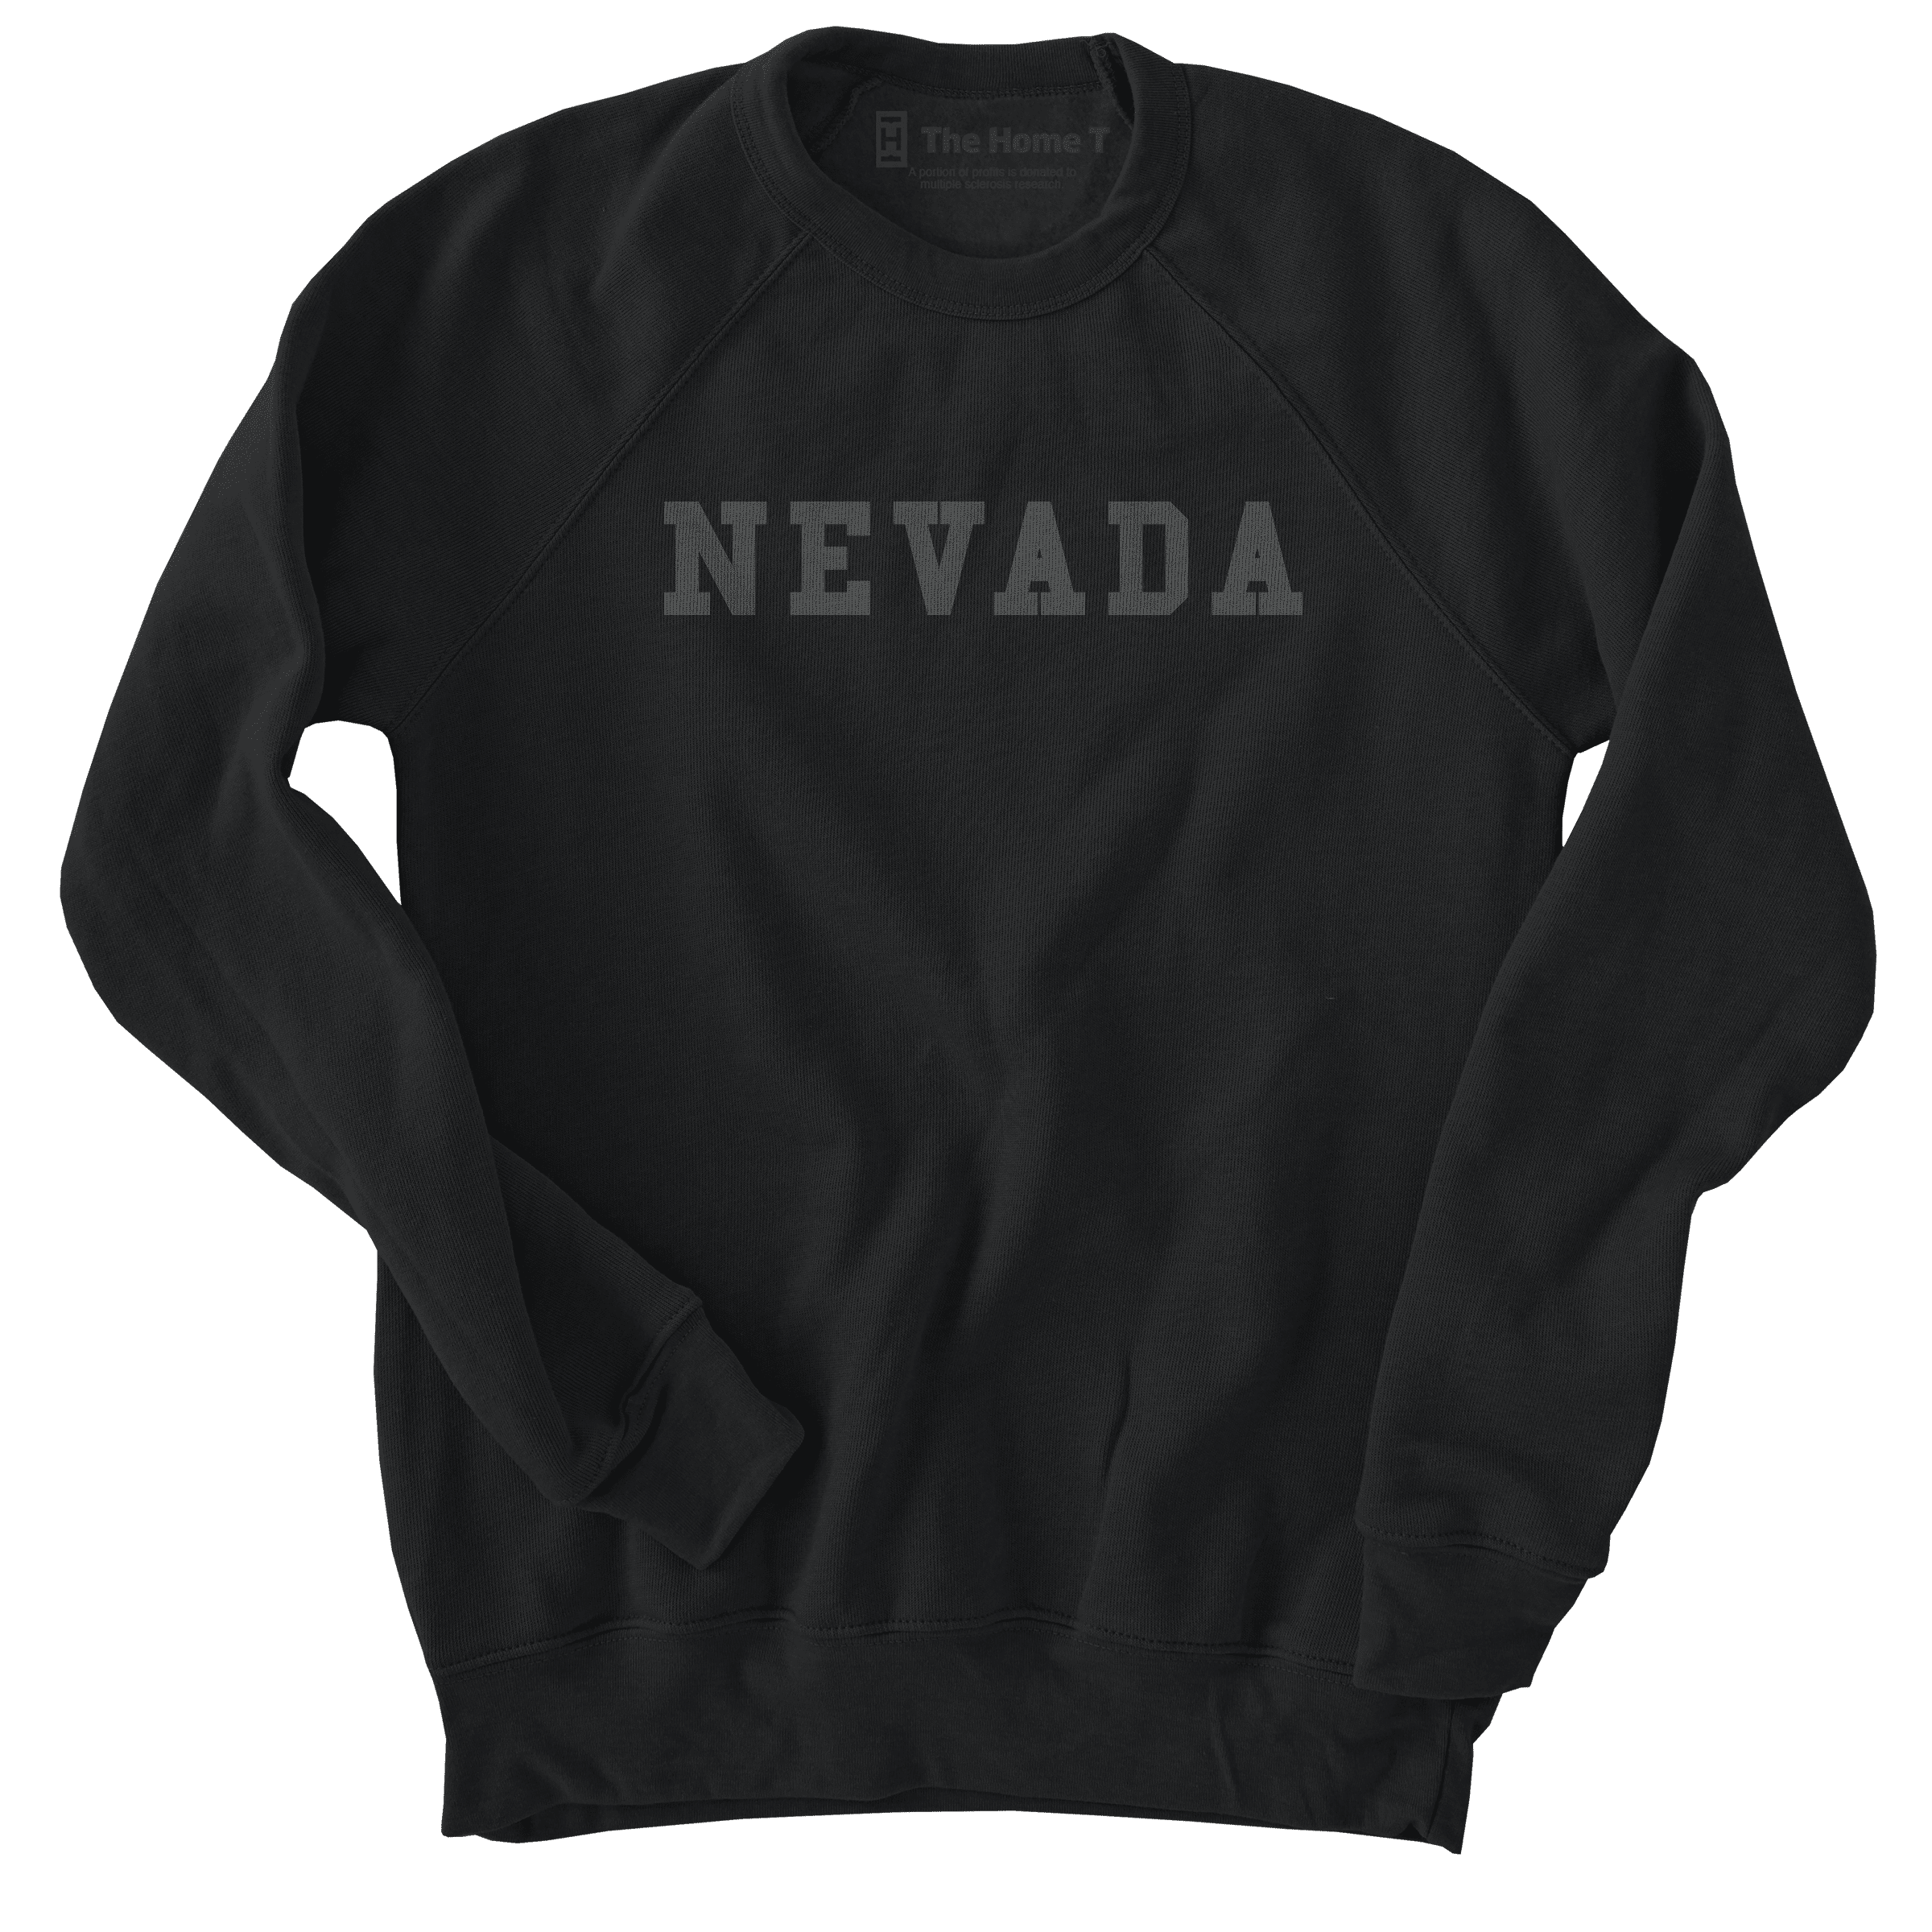 Nevada Black on Black